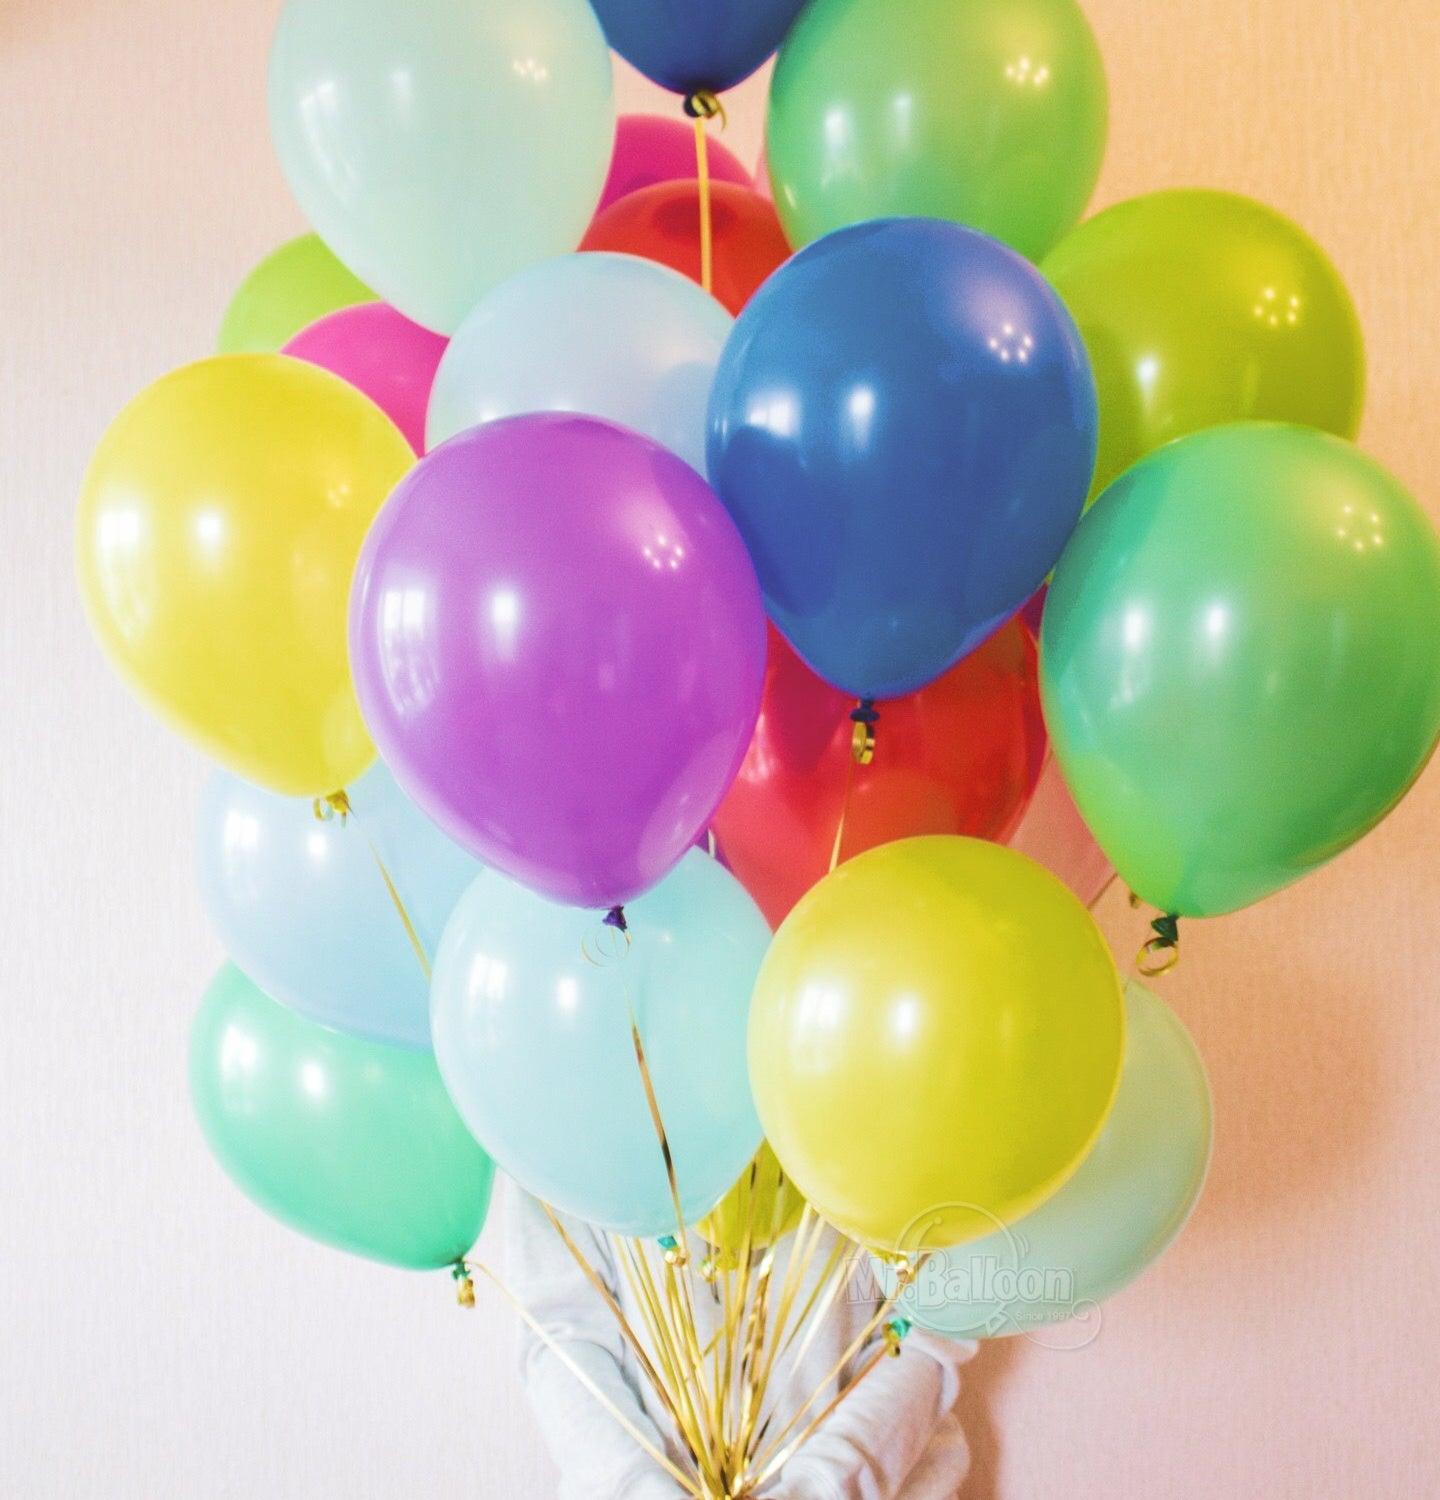 彩色繽紛系列/6款 - MR.Balloon 氣球先生官網